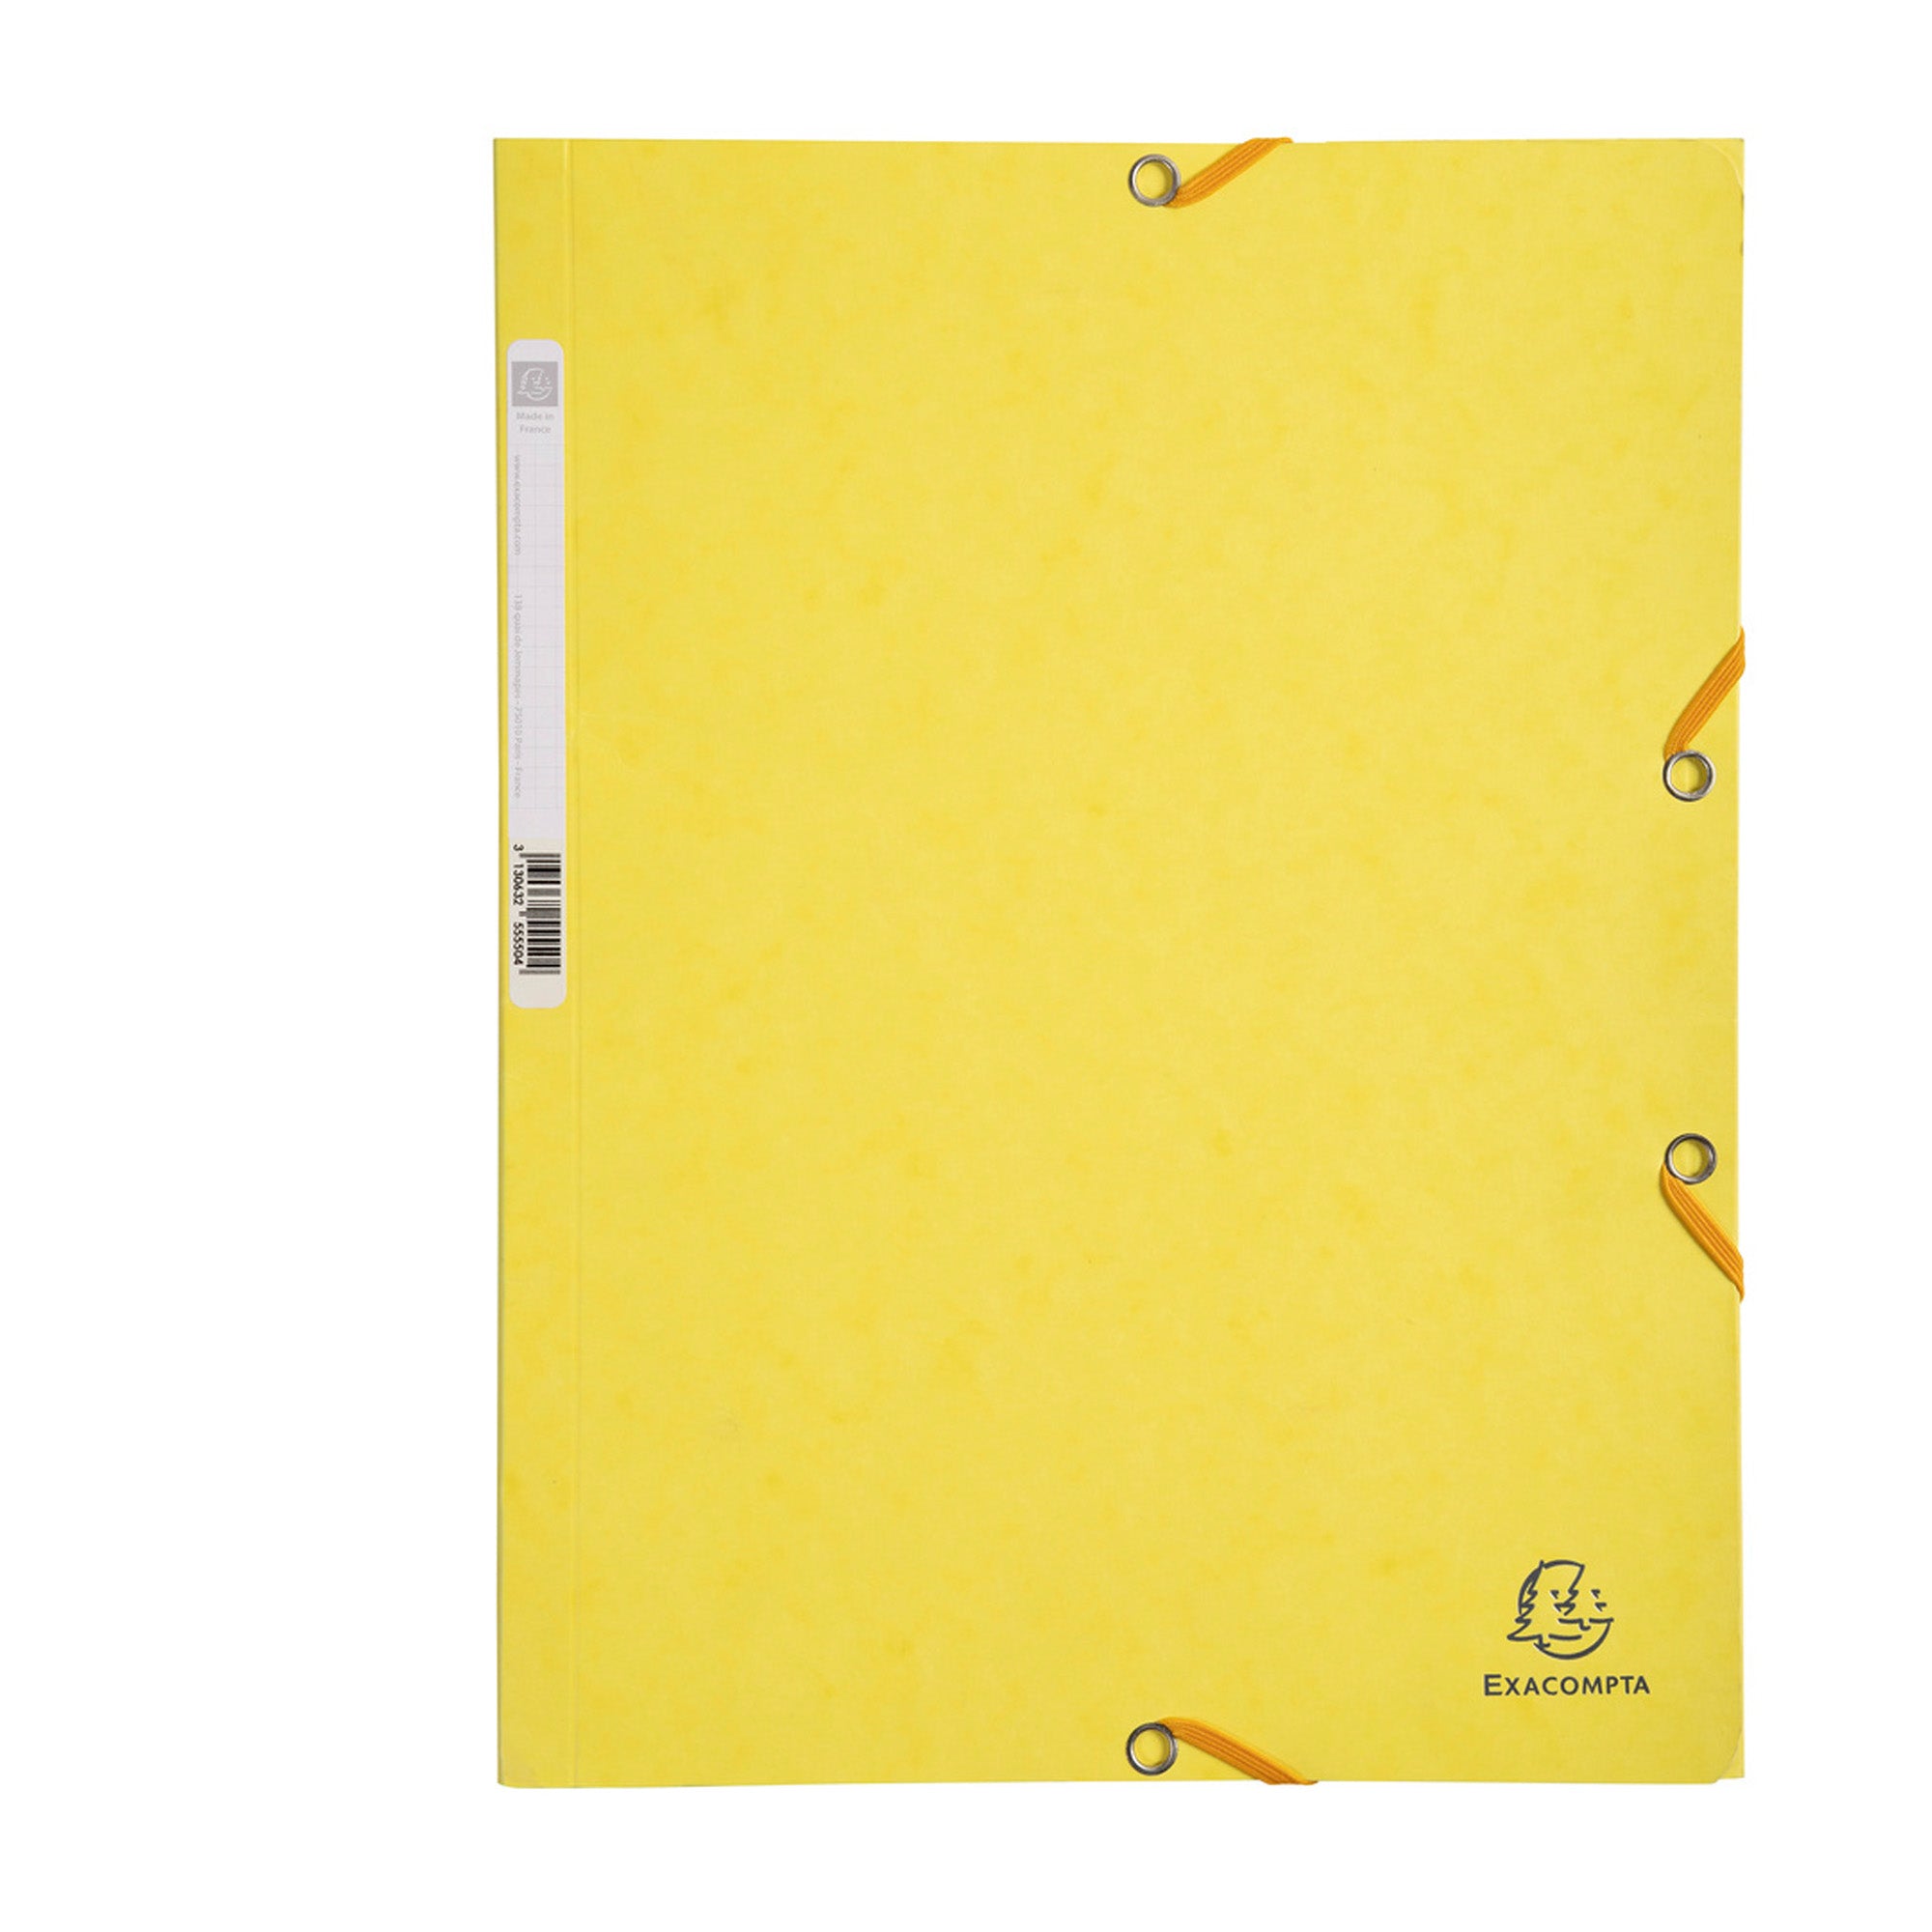 exacompta-cartella-elastico-24x32cm-giallo-limone-cartoncino-lustre-425gr